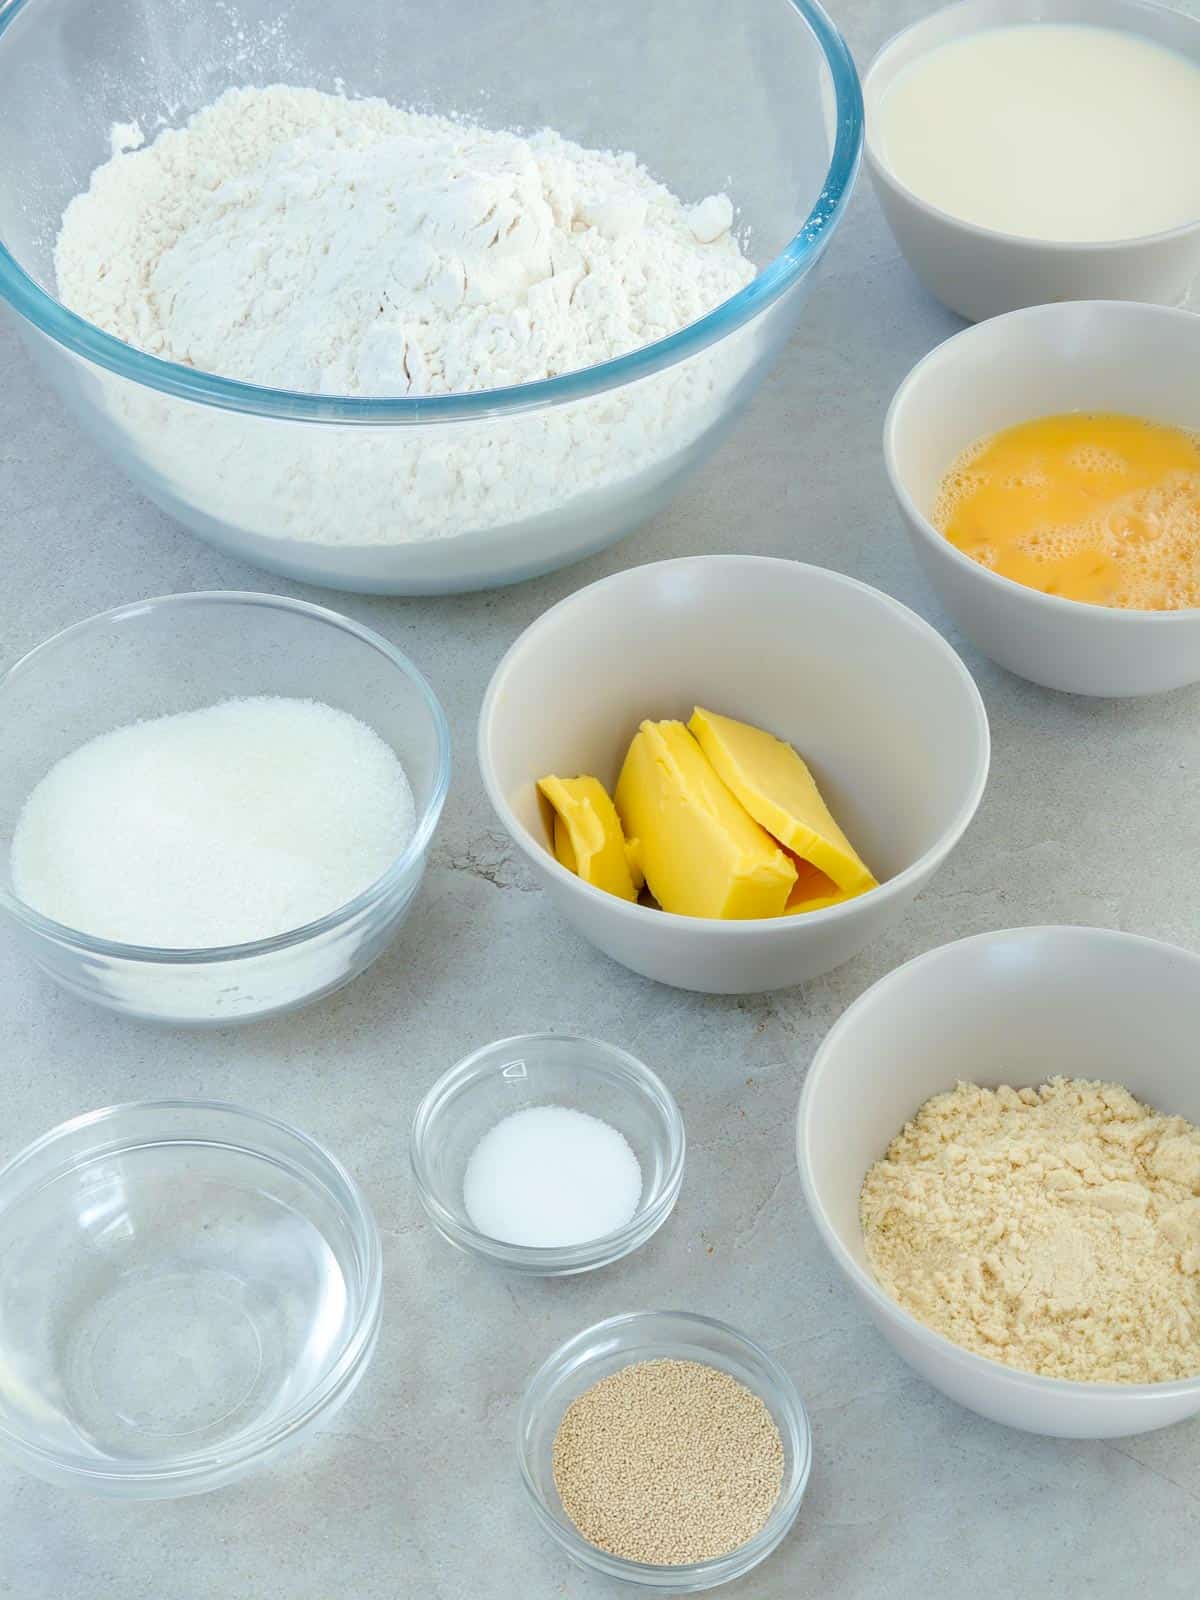 flour, butter, eggs, yeast, water, sugar, salt, milk in bowls